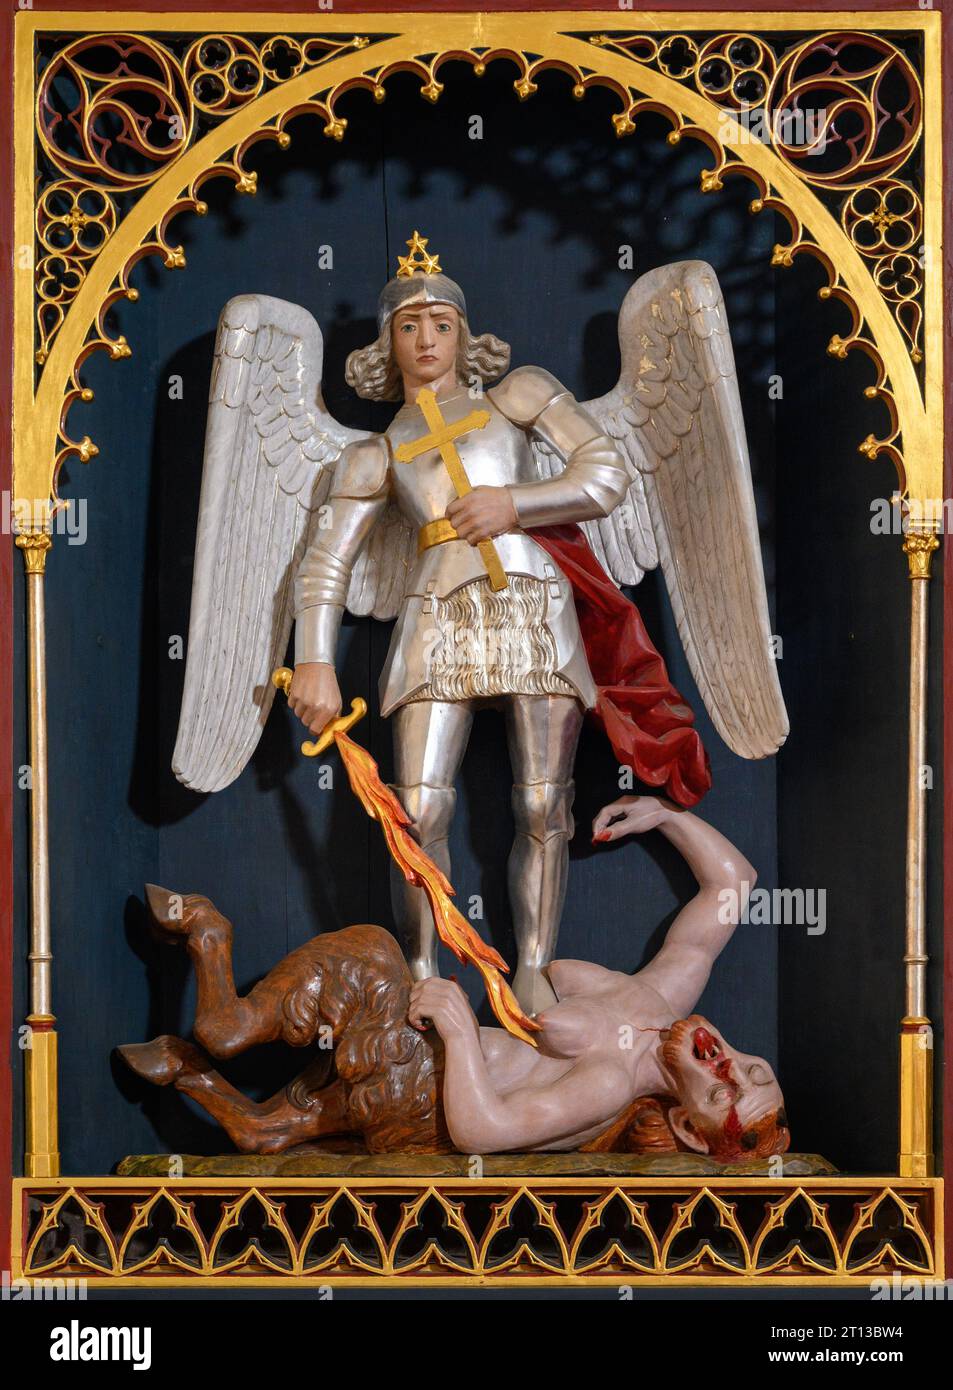 Der Heilige Michael, der Erzengel, besiegt den Teufel. Die Kirche des Heiligen Geistes in Ľubica, Slowakei. Stockfoto